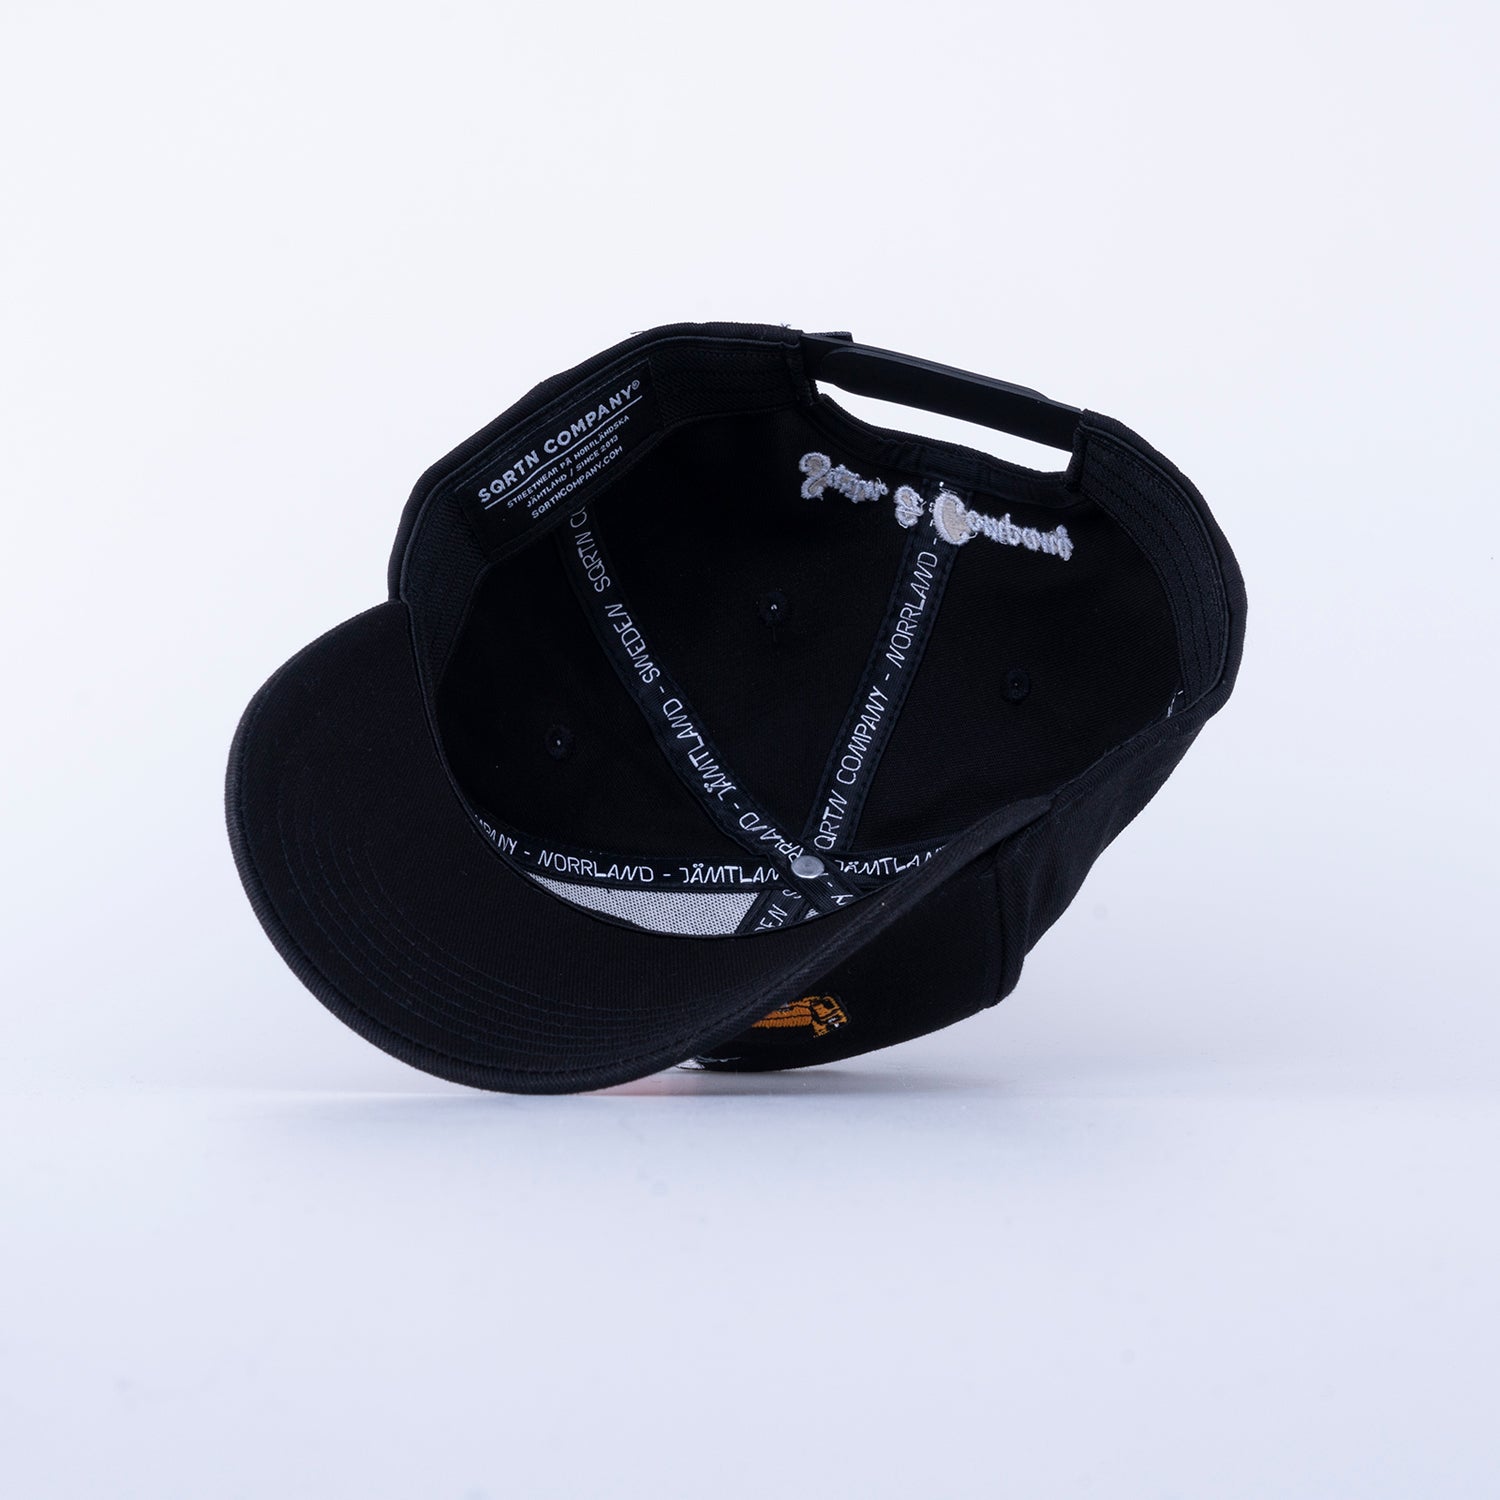 OCKELBO 120 CAP - BLACK